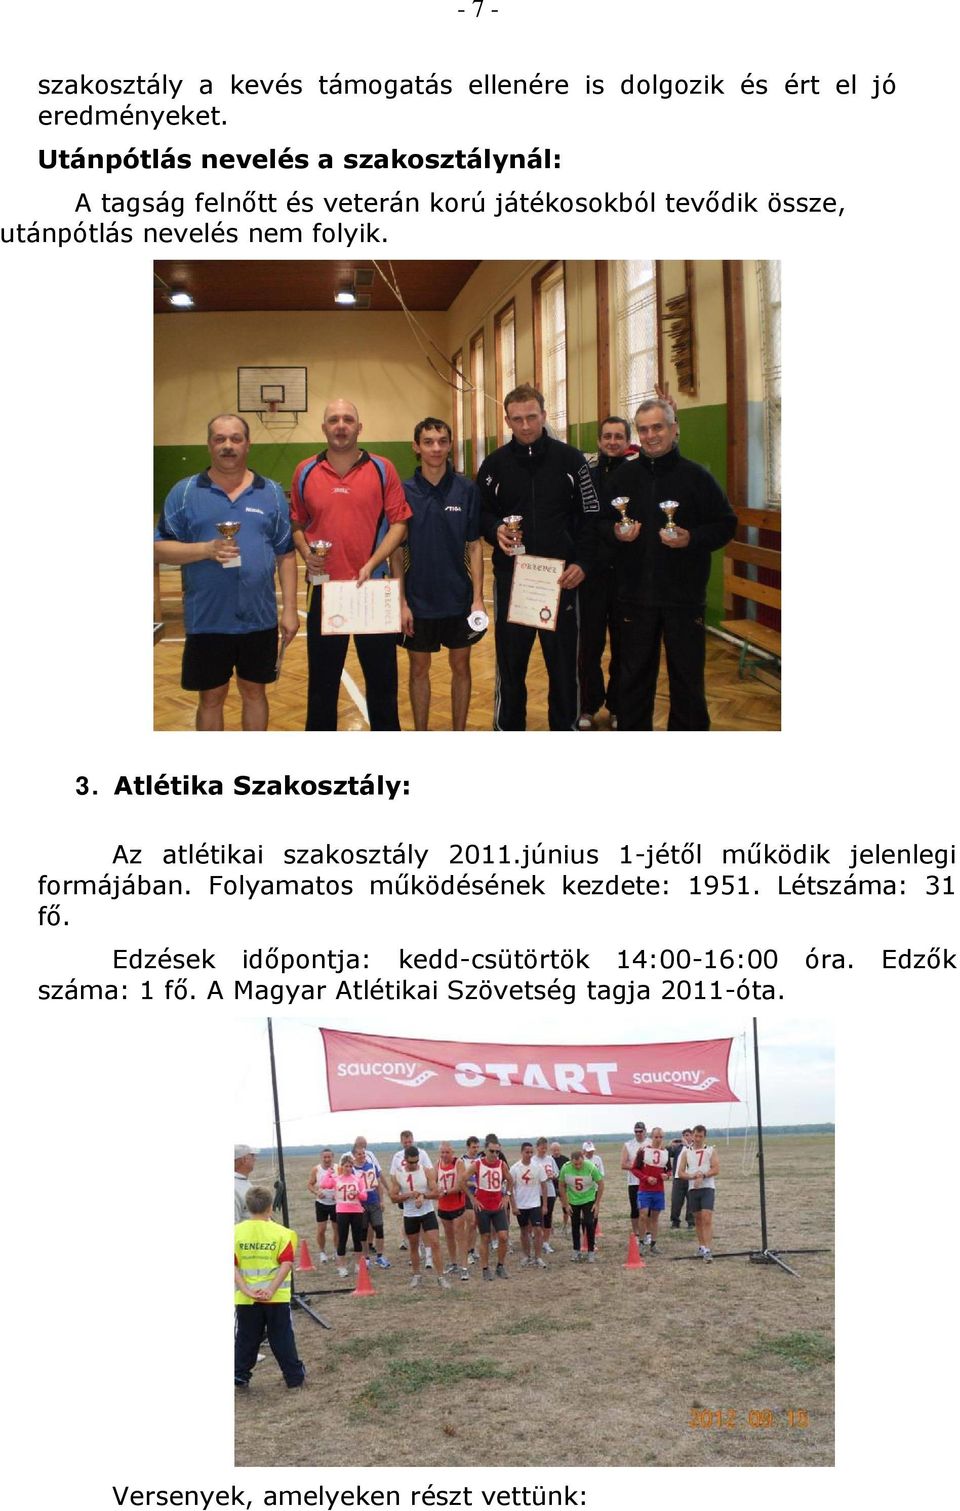 3. Atlétika Szakosztály: Az atlétikai szakosztály 2011.június 1-jétől működik jelenlegi formájában.